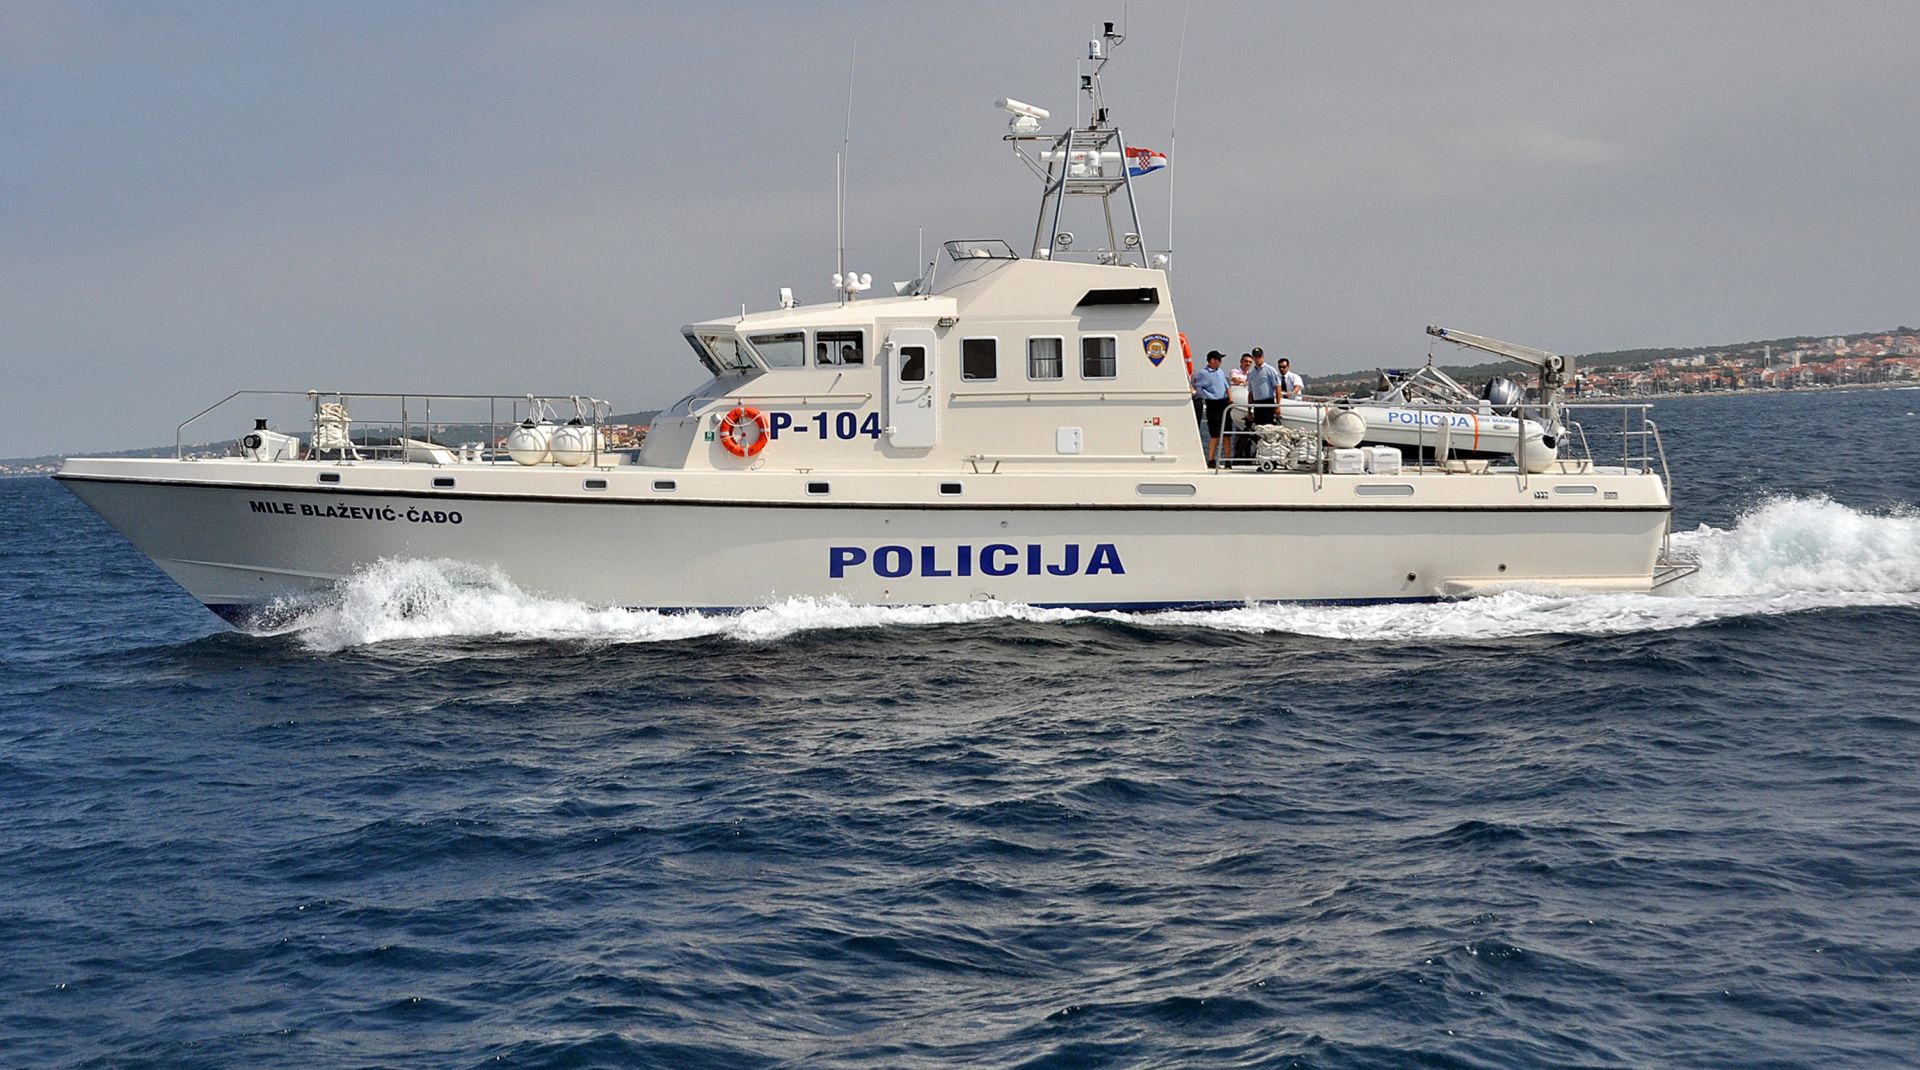 15.07.2011., Zadar - Tijekom demonstracije novog plovila pomorske policije sudarila su se dva policijska broda. Vece stete i ozlijedjenih nije bilo.
Photo: Filip Brala/PIXSELL